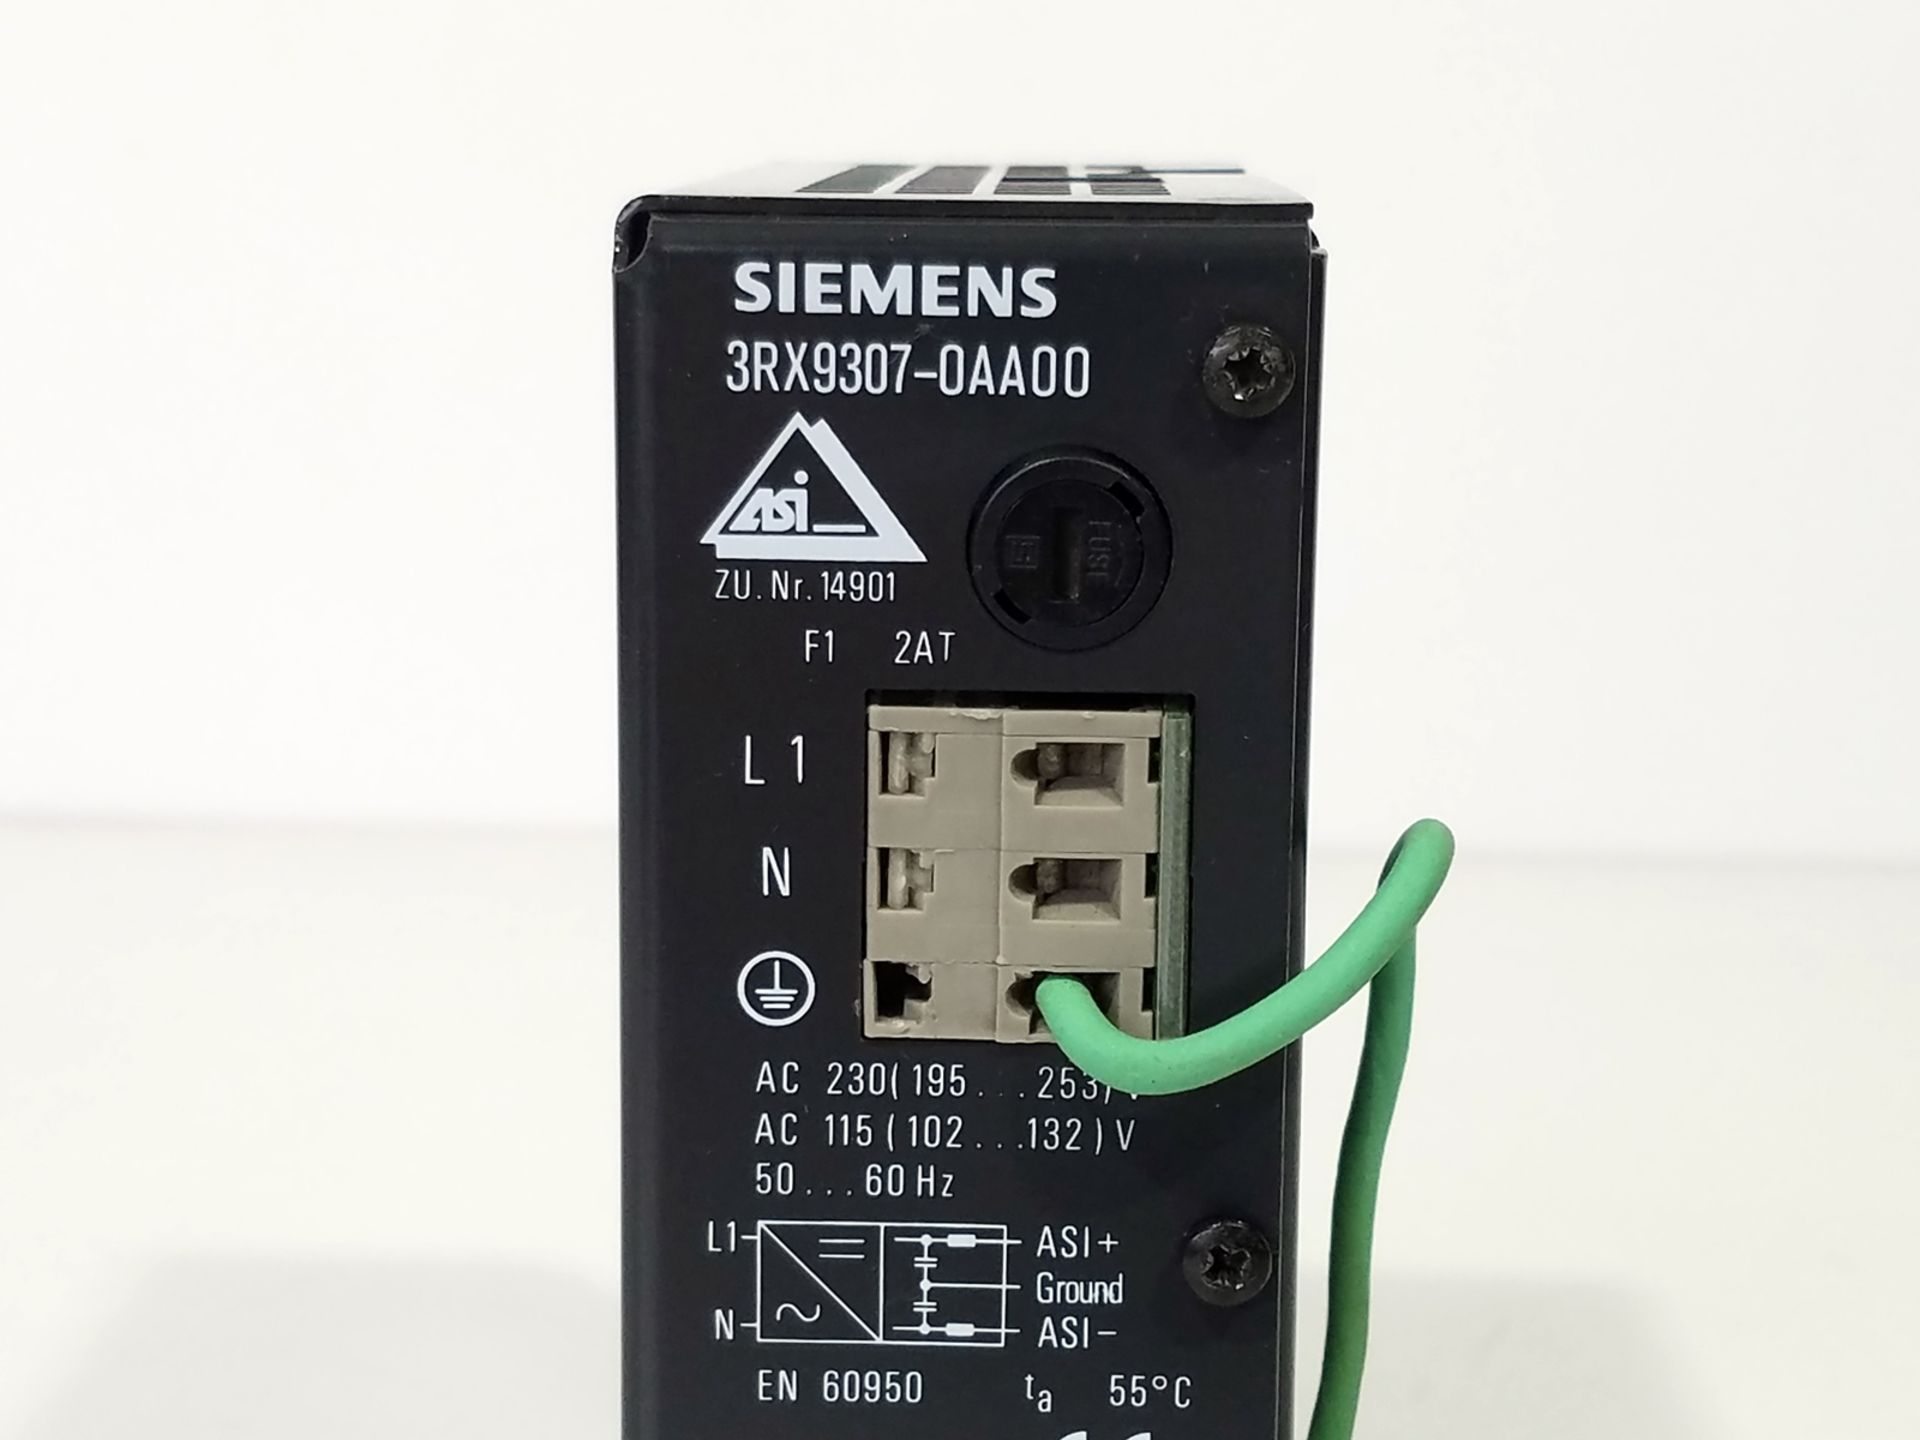 Siemens 3RX9307-0AA00 Power Supply P/N 14901 - Image 2 of 3